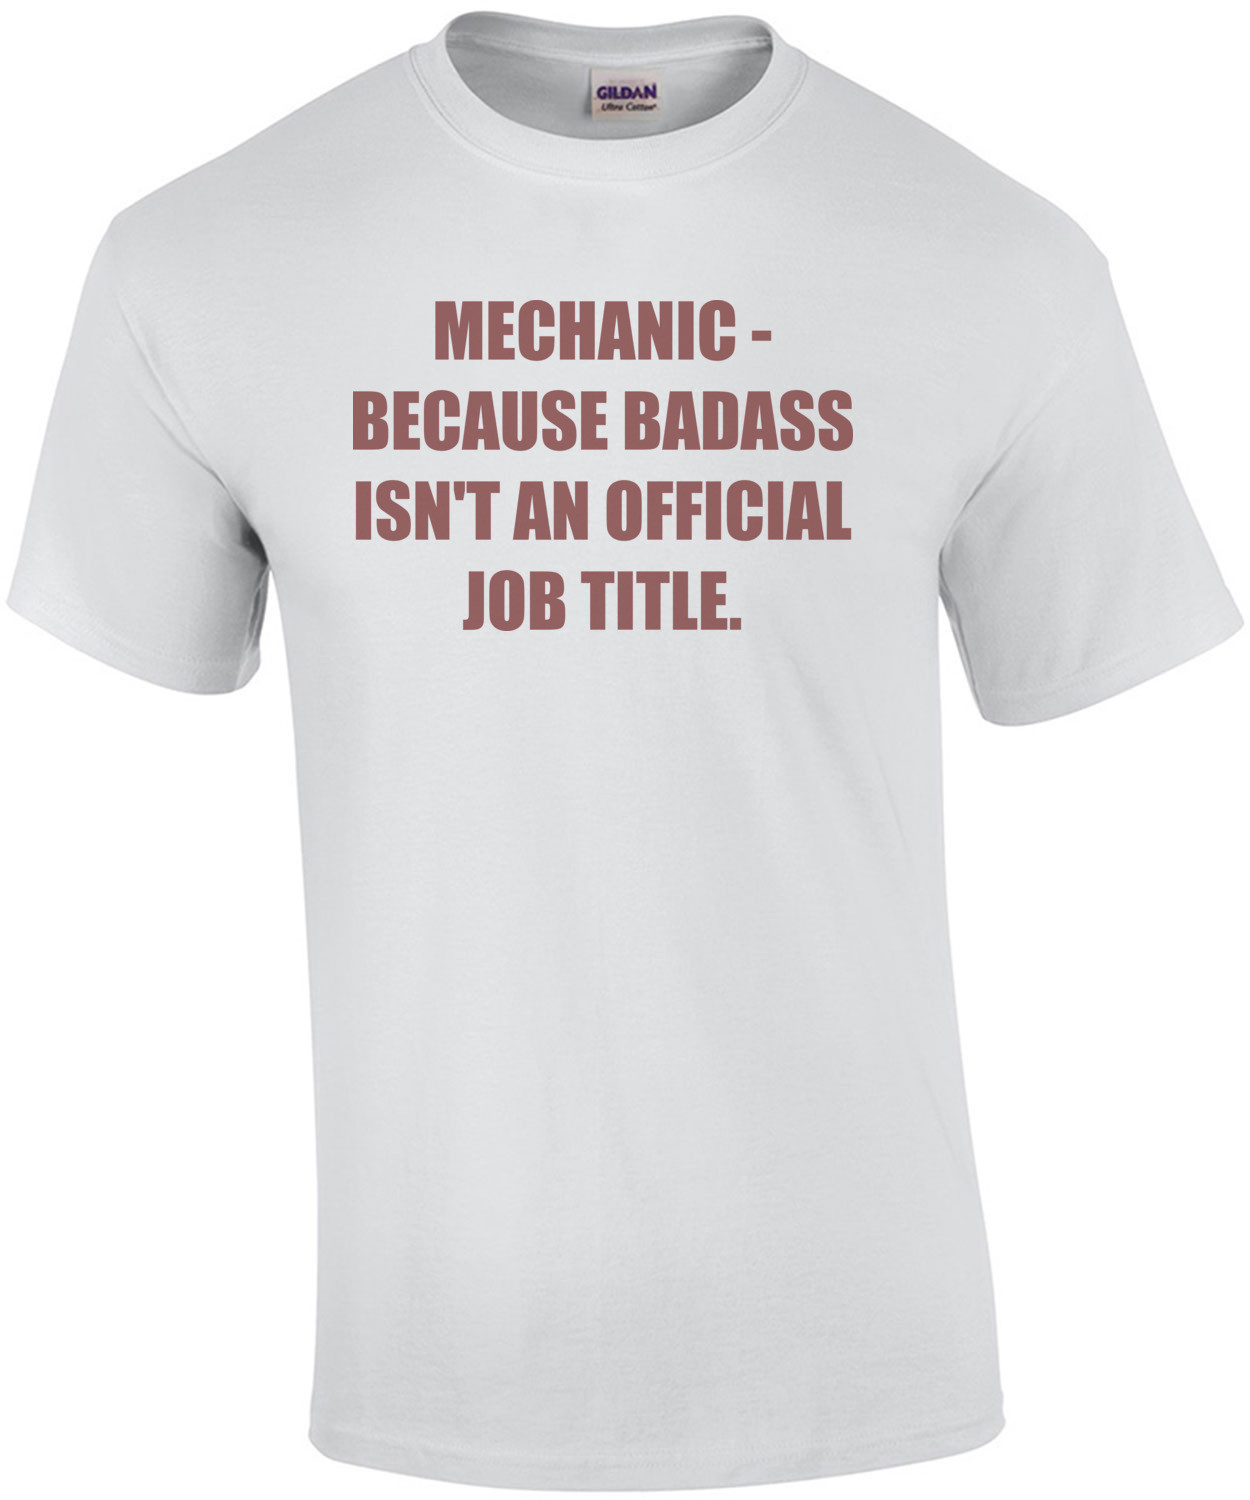 MECHANIC - BECAUSE BADASS ISN'T AN OFFICIAL JOB TITLE. - funny mechanic Shirt